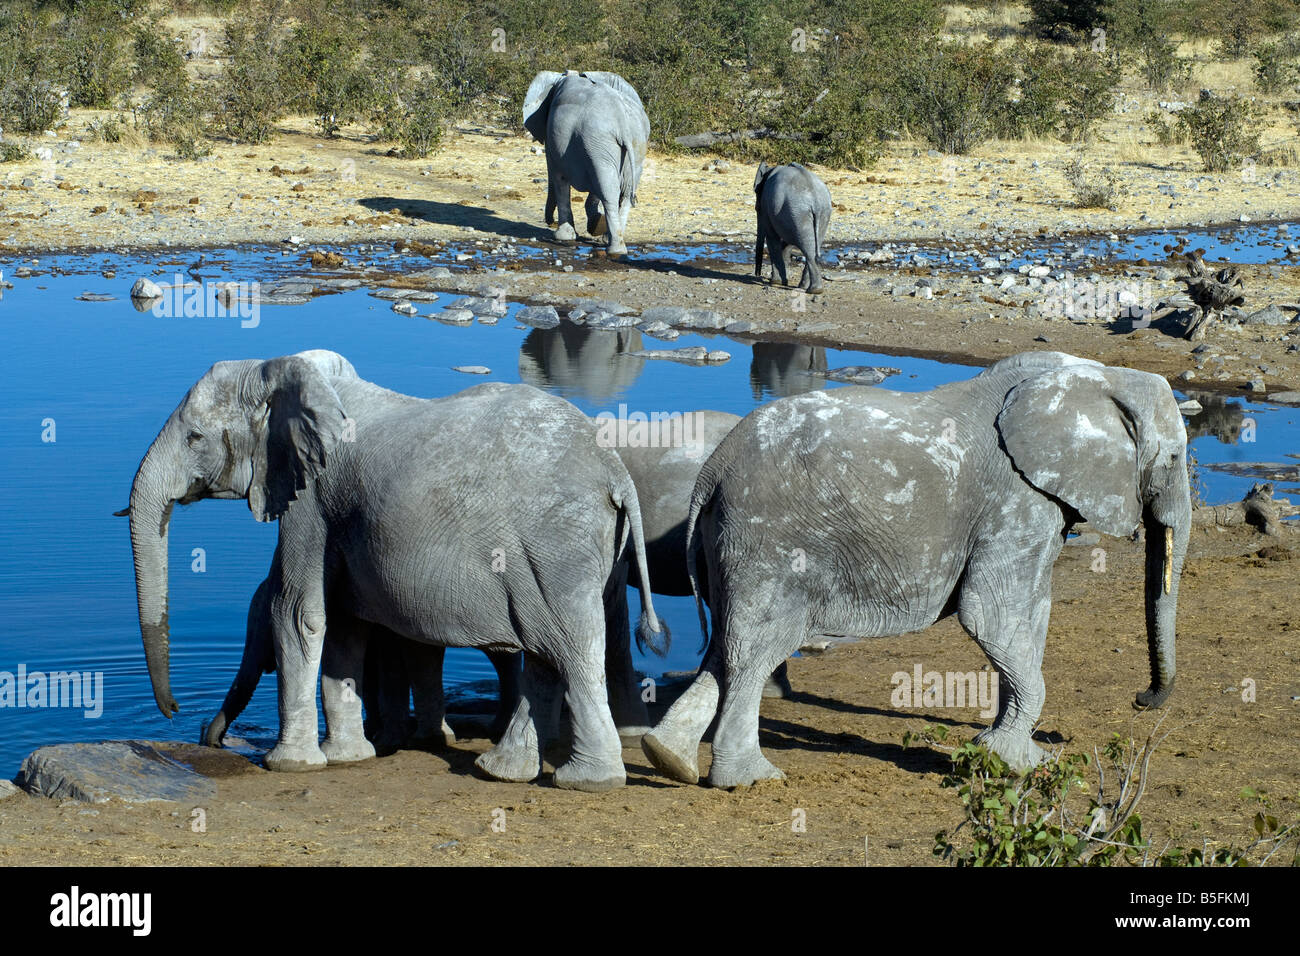 African elephant Loxodonta africana drinking at Halali waterhole Etosha National Park Namibia Stock Photo